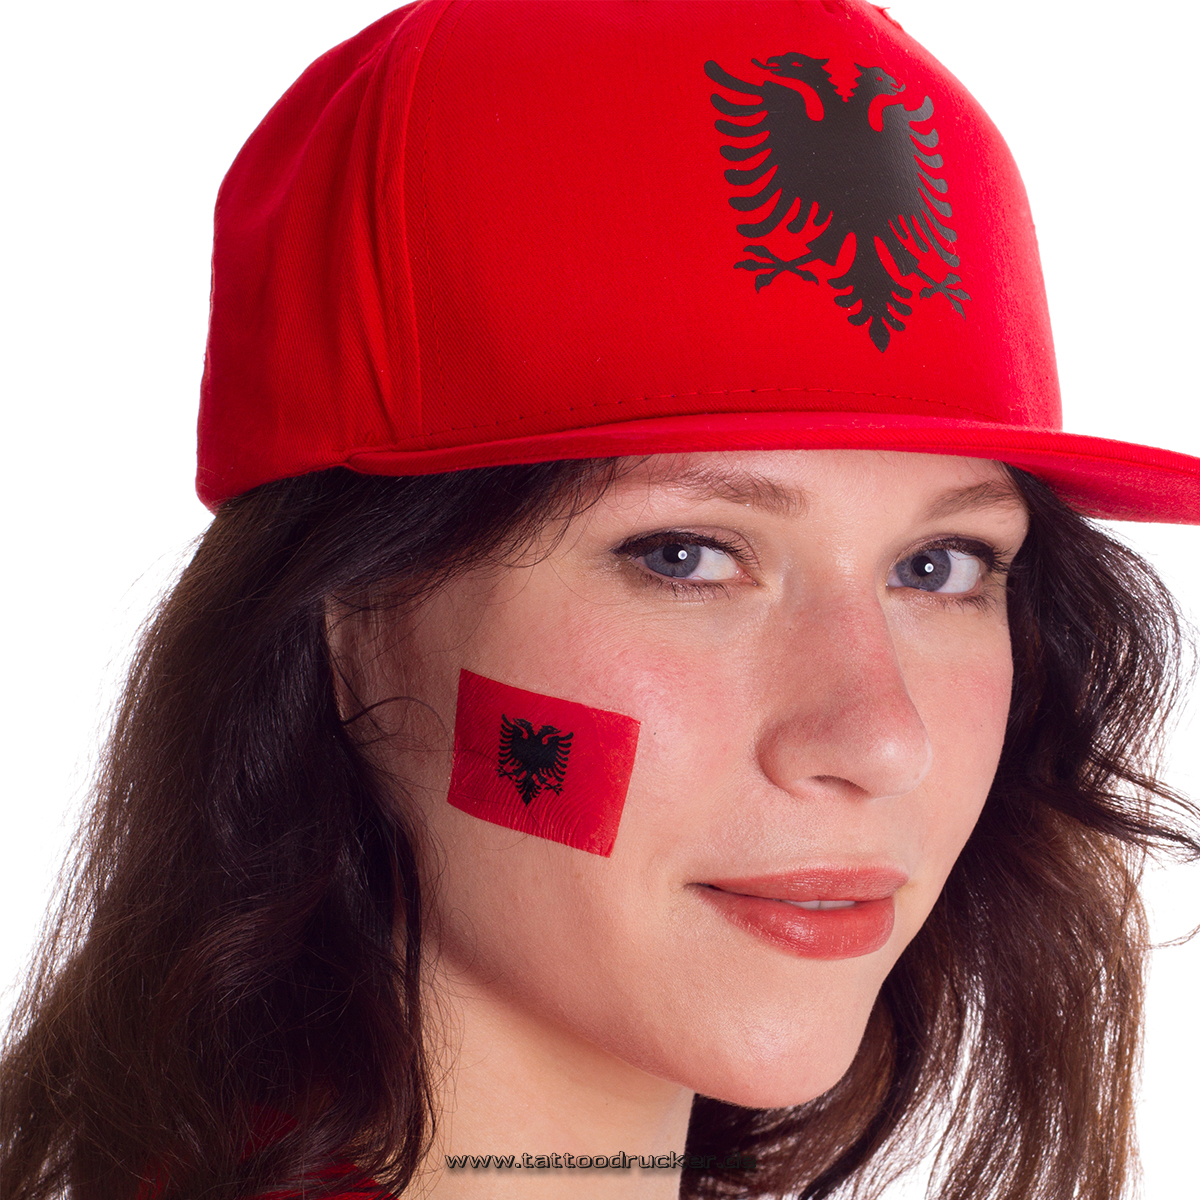 Albania fan tattoo 100 pcs pack